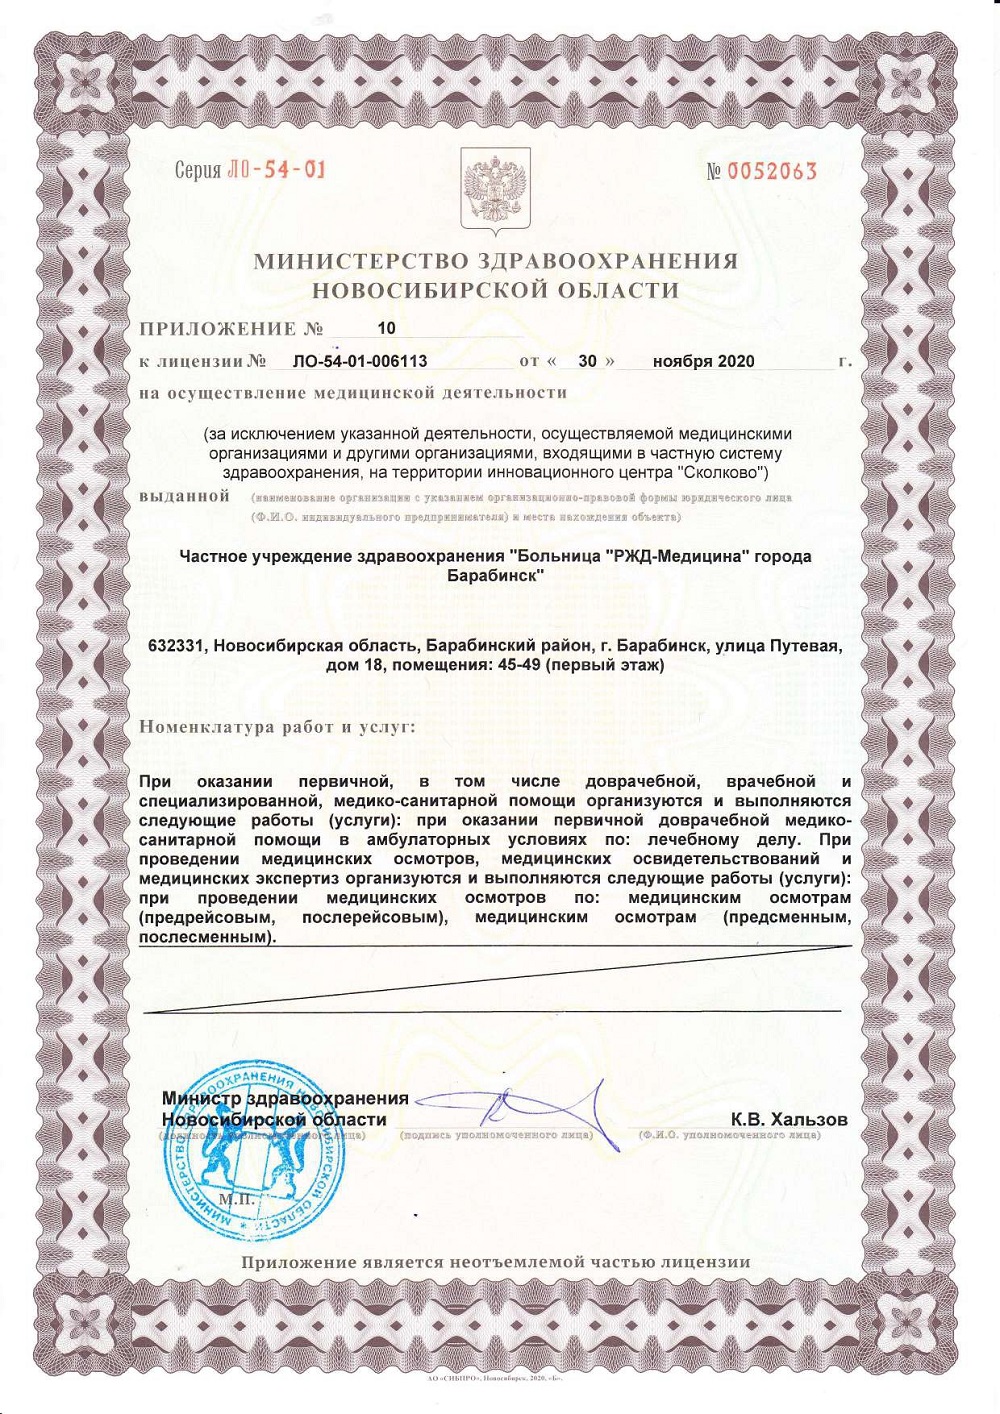 ЧУЗ Барабинск. Лицензия 54 01 006113 от 30.11.2020 page 0016